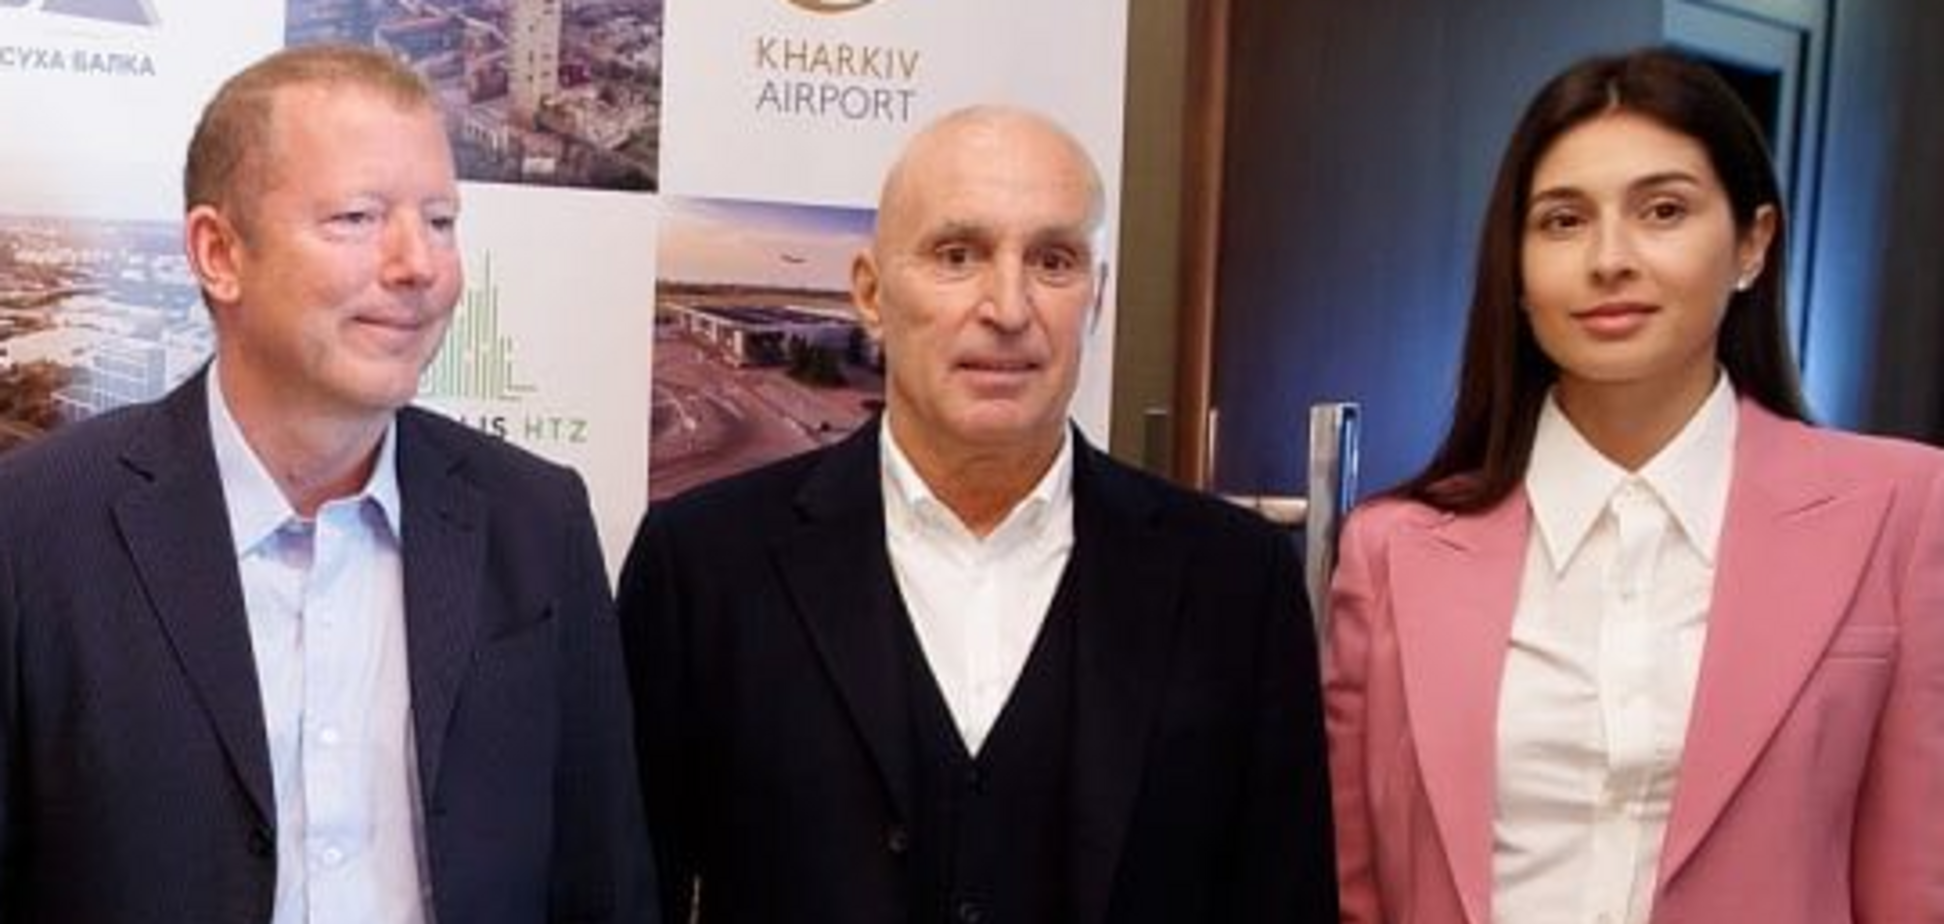 Сім'я Ротшильдів заявила про готовність інвестувати в 'Екополіс ХТЗ' Ярославського